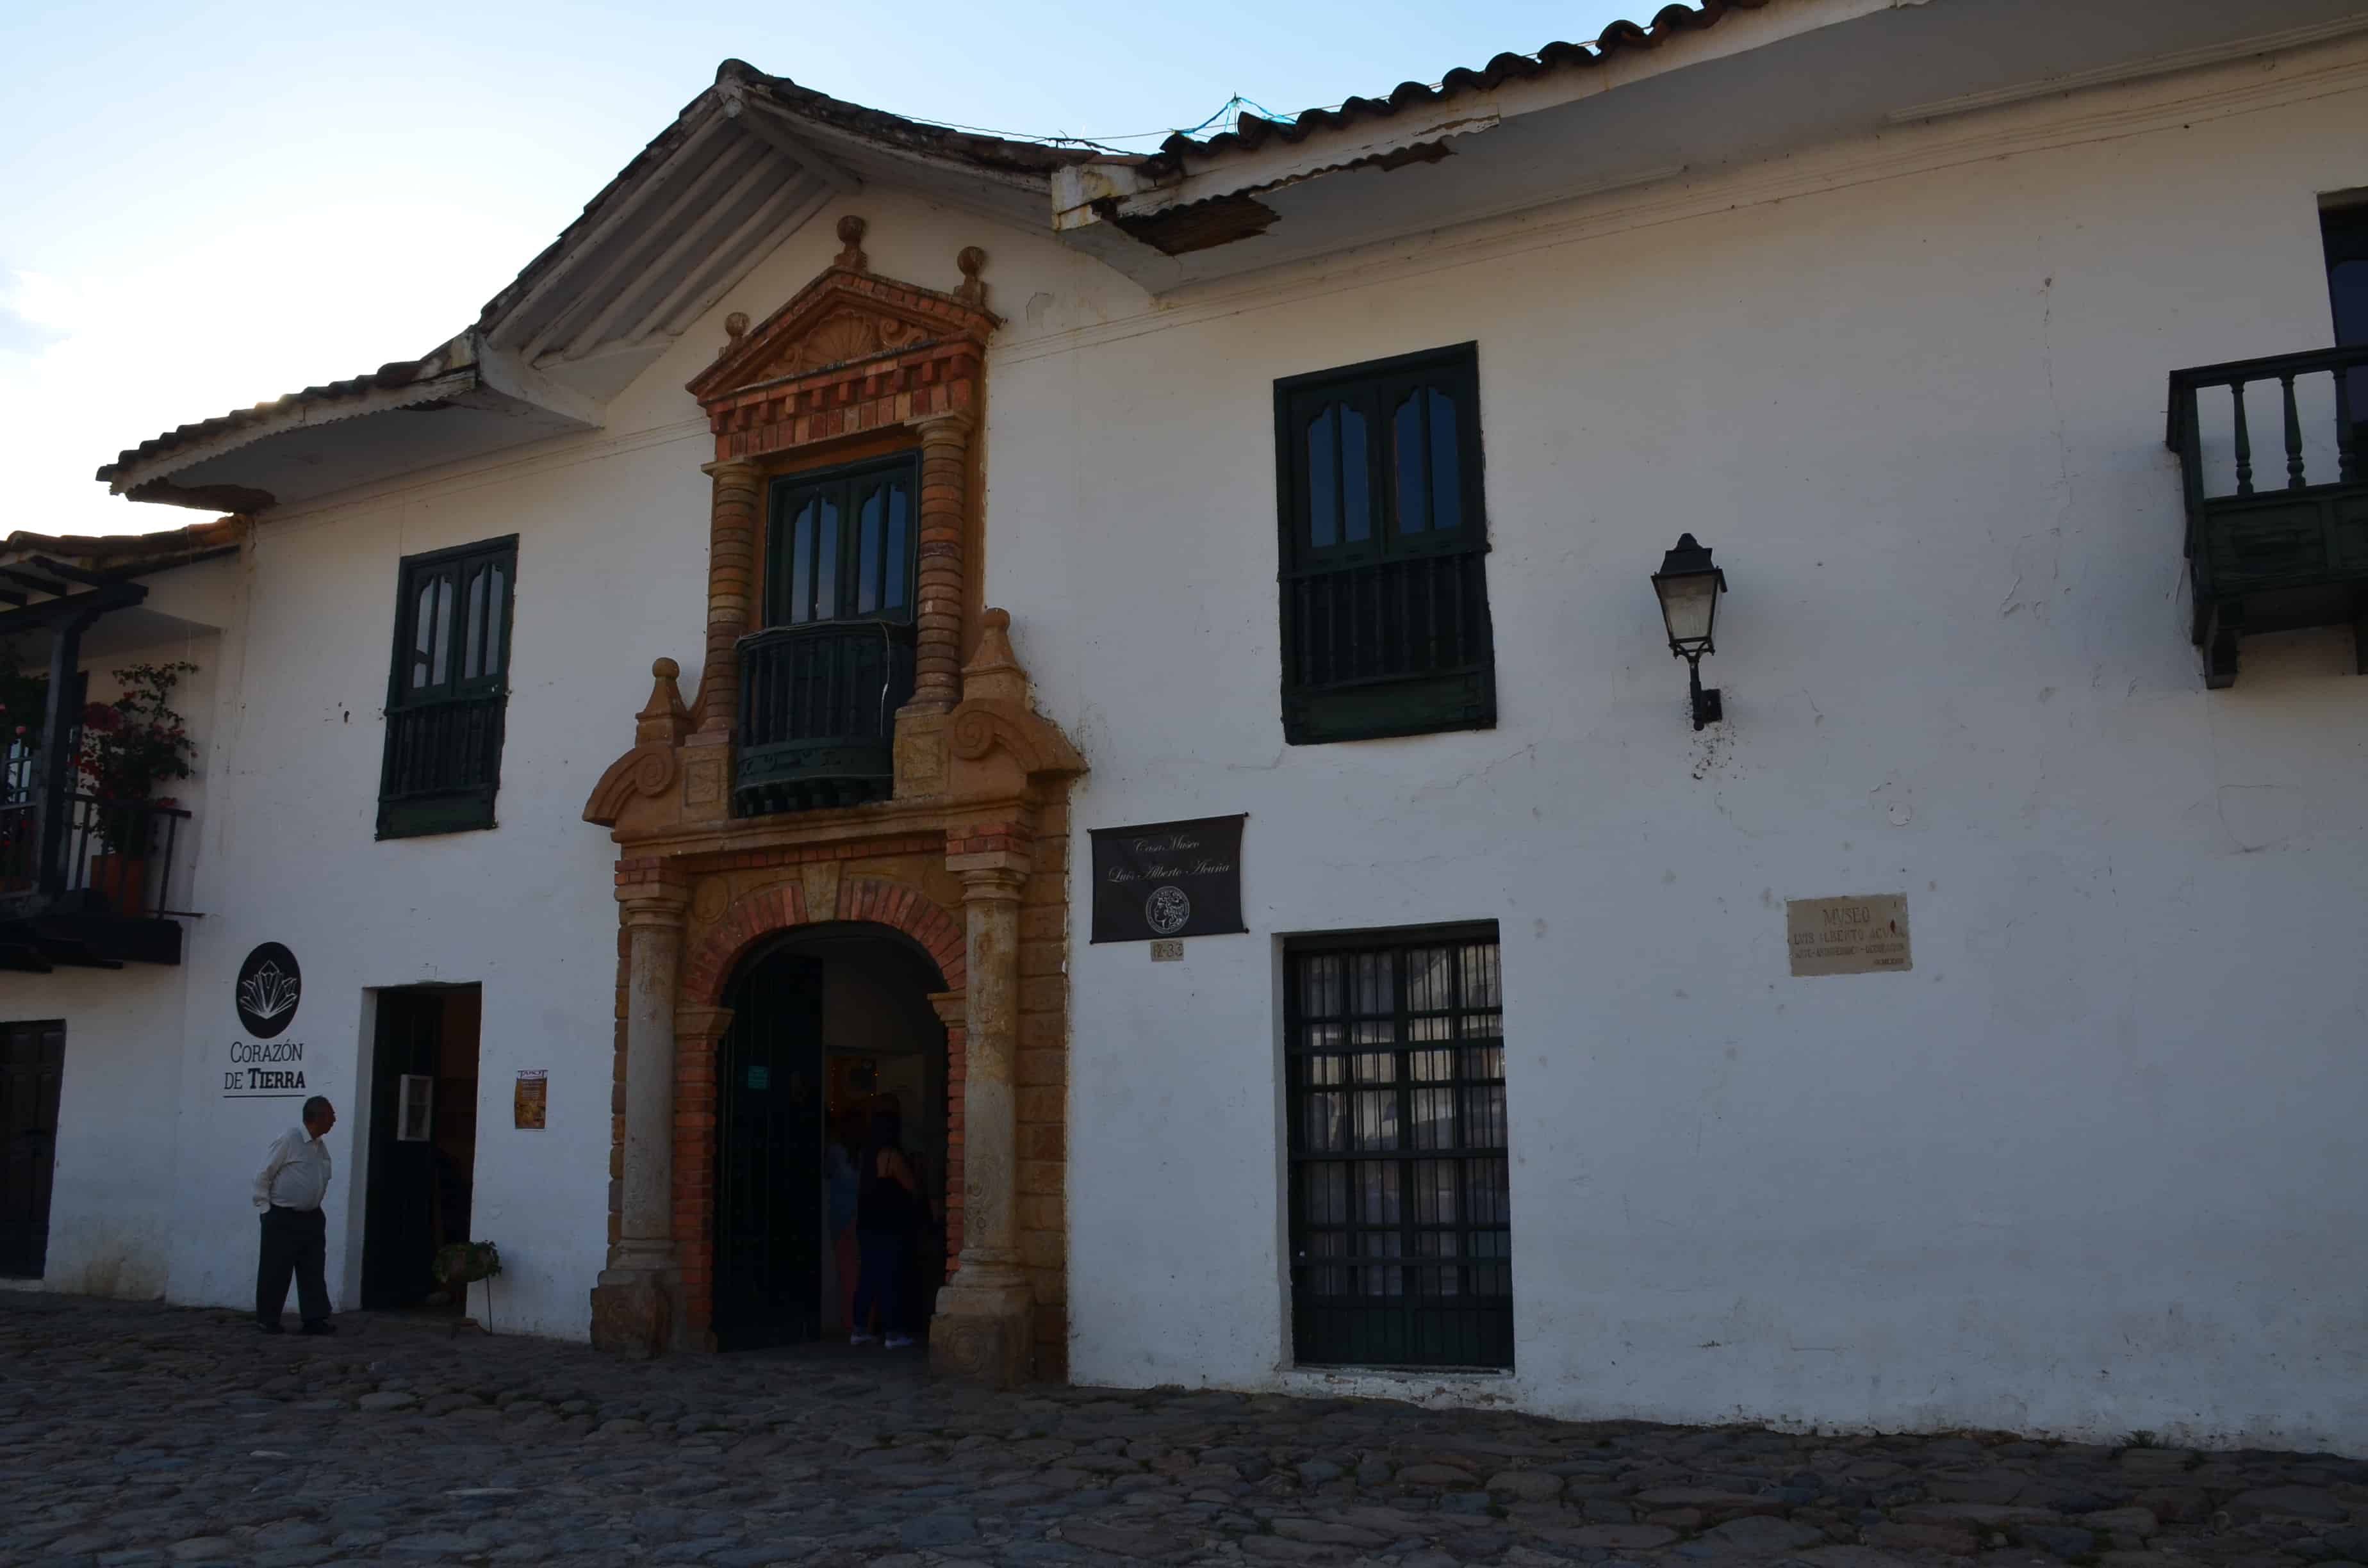 Casa Museo Luis Alberto Acuña in Villa de Leyva, Boyacá, Colombia